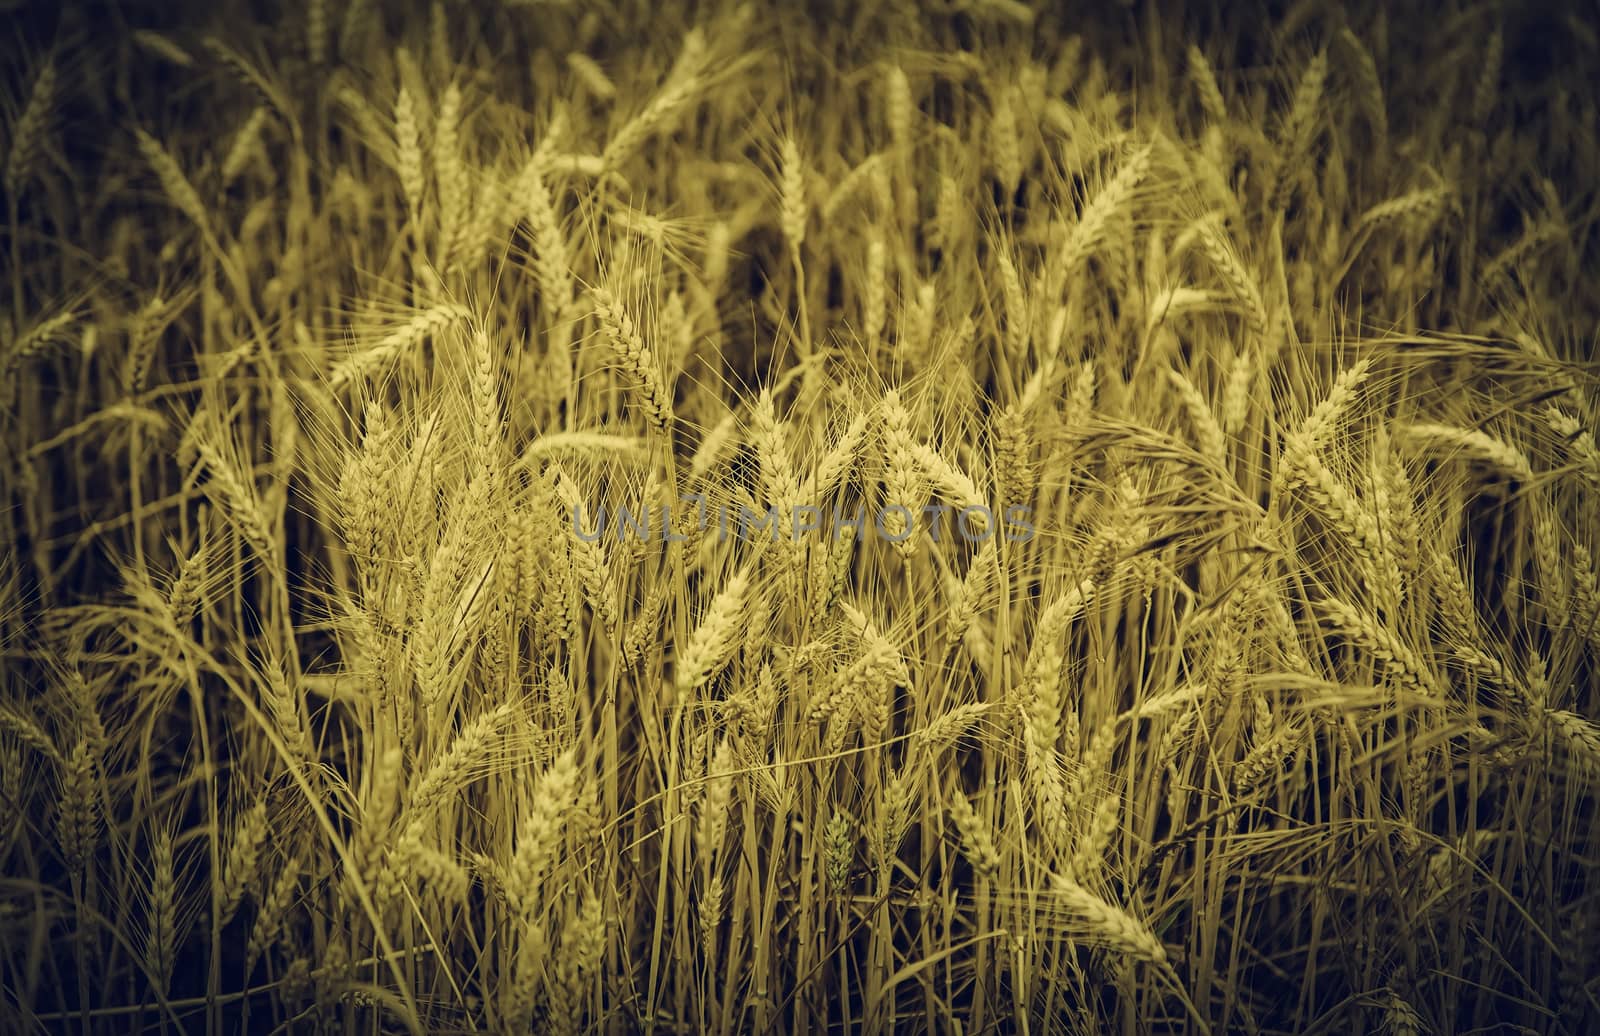 Wheat field by esebene